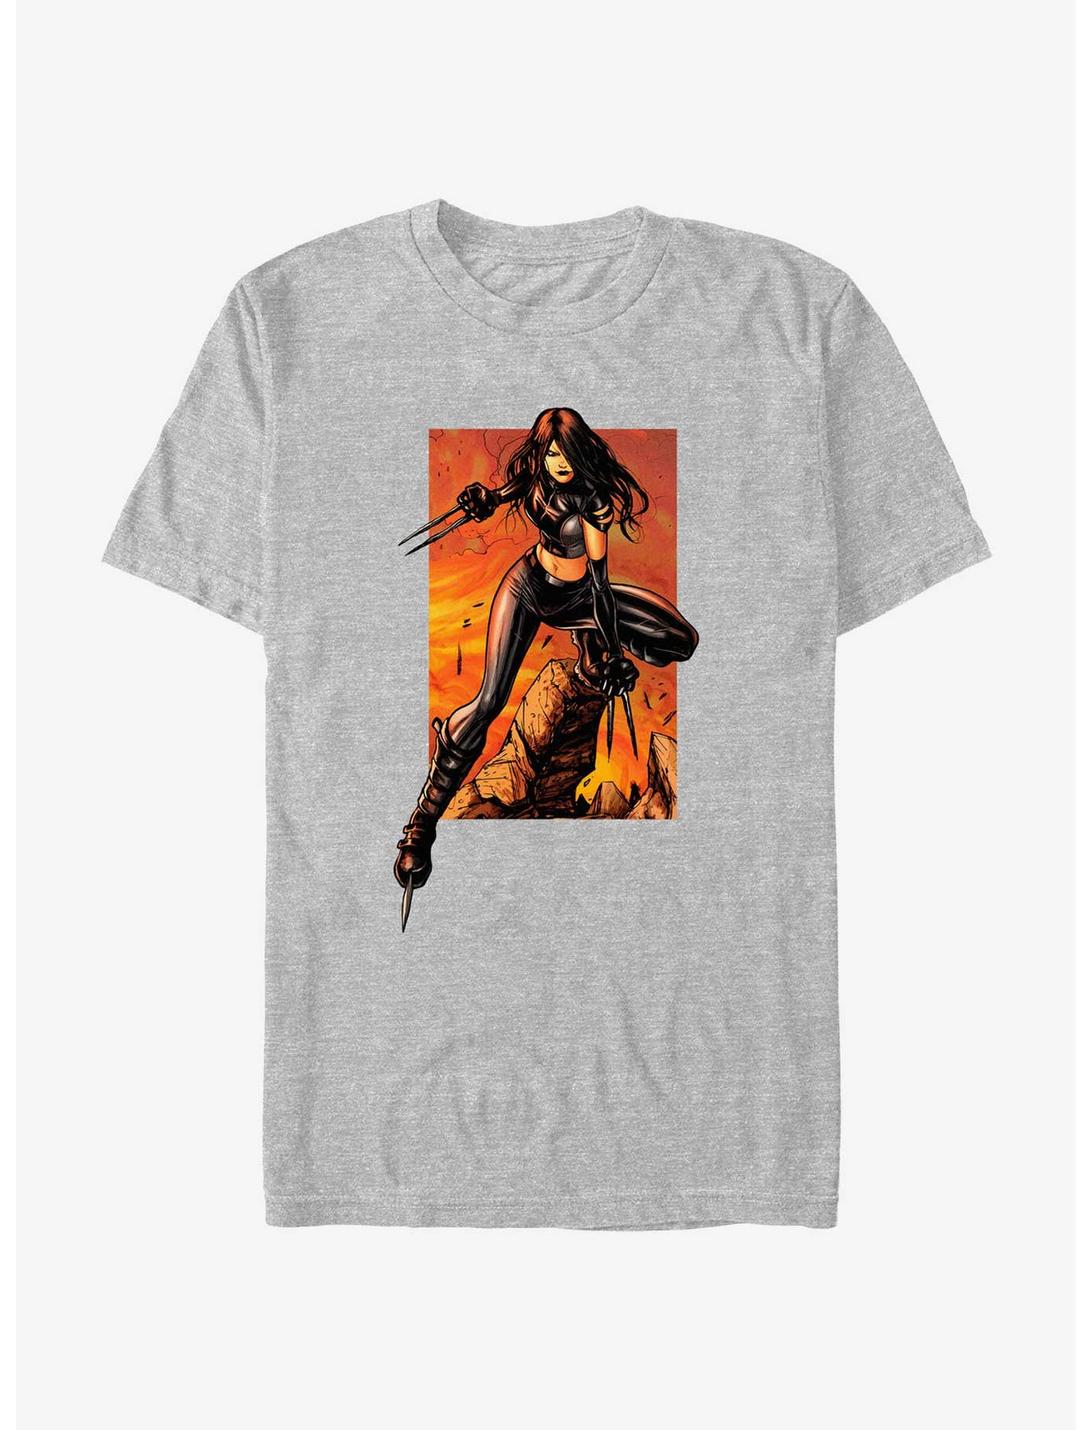 X-Men X-23 Breakout T-Shirt, ATH HTR, hi-res